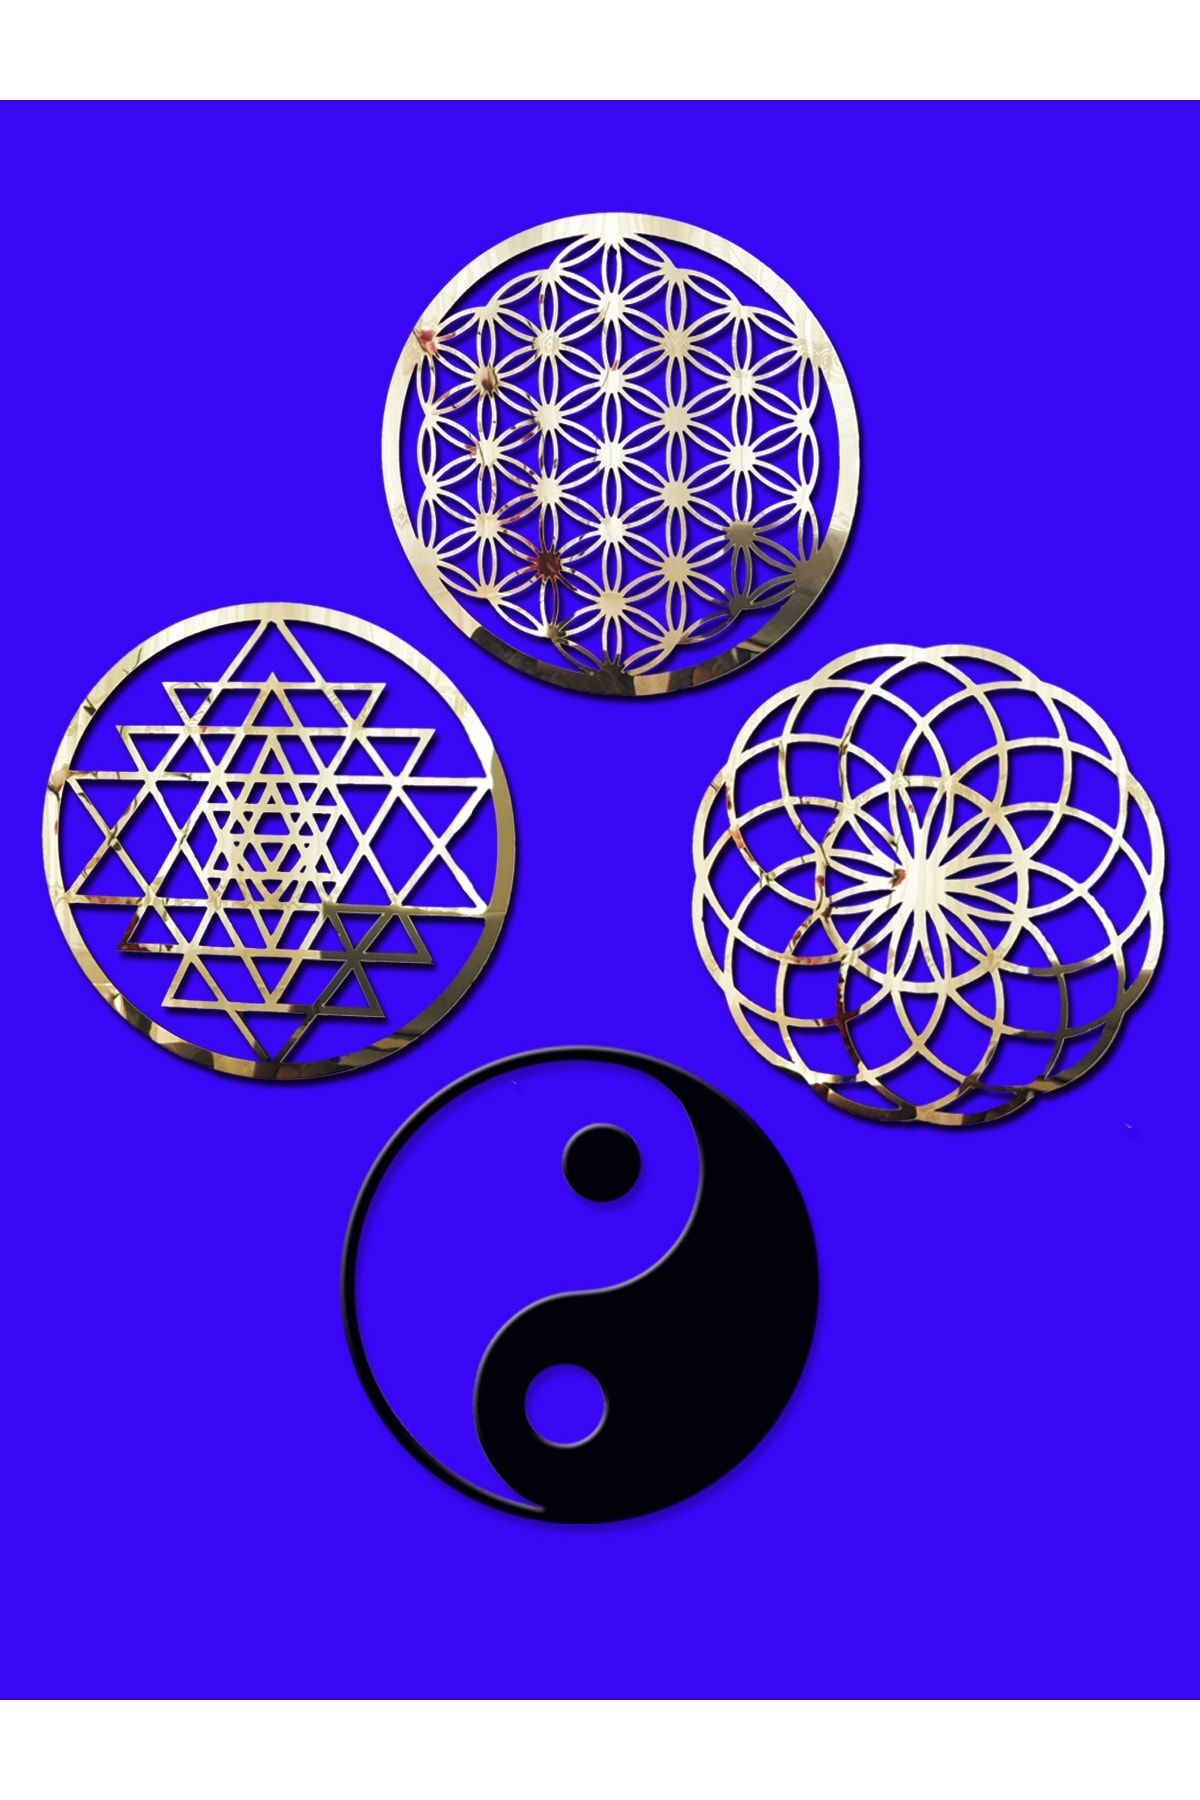 GİZEM SHOP Yaşam Çiçeği,sriyantra,torus Ve Ying Yang 4'lü Set Kutsal Geometrik Şekiller 49x49cm